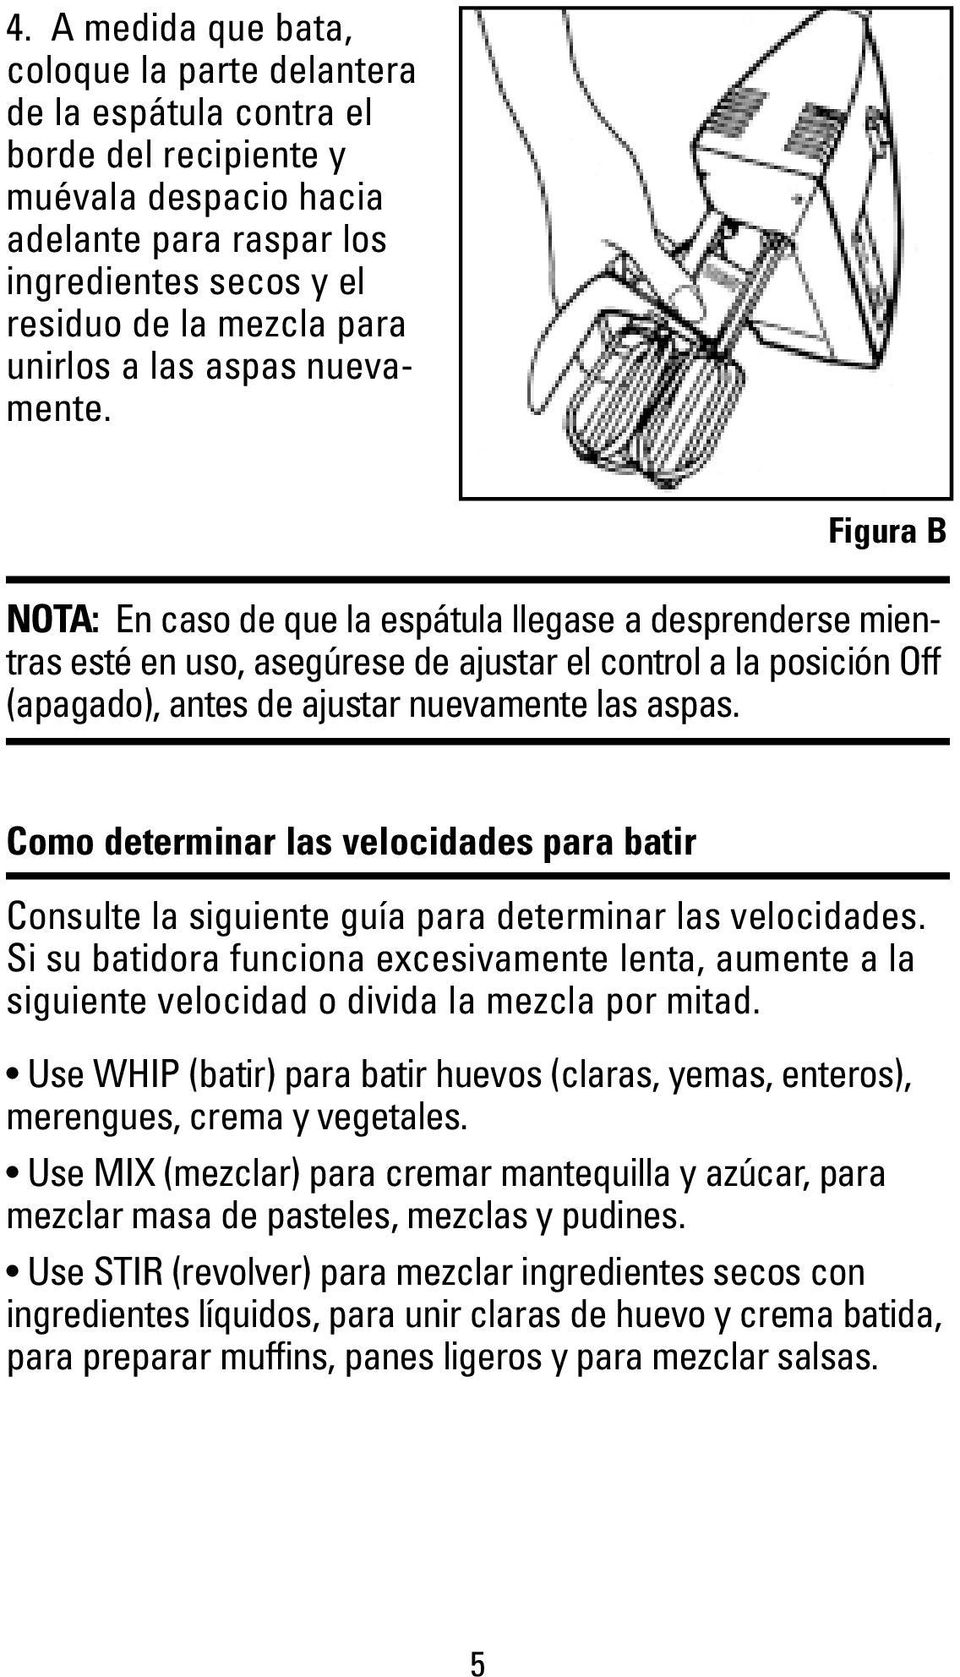 Figura B NOTA: En caso de que la espátula llegase a desprenderse mientras esté en uso, asegúrese de ajustar el control a la posición Off (apagado), antes de ajustar nuevamente las aspas.